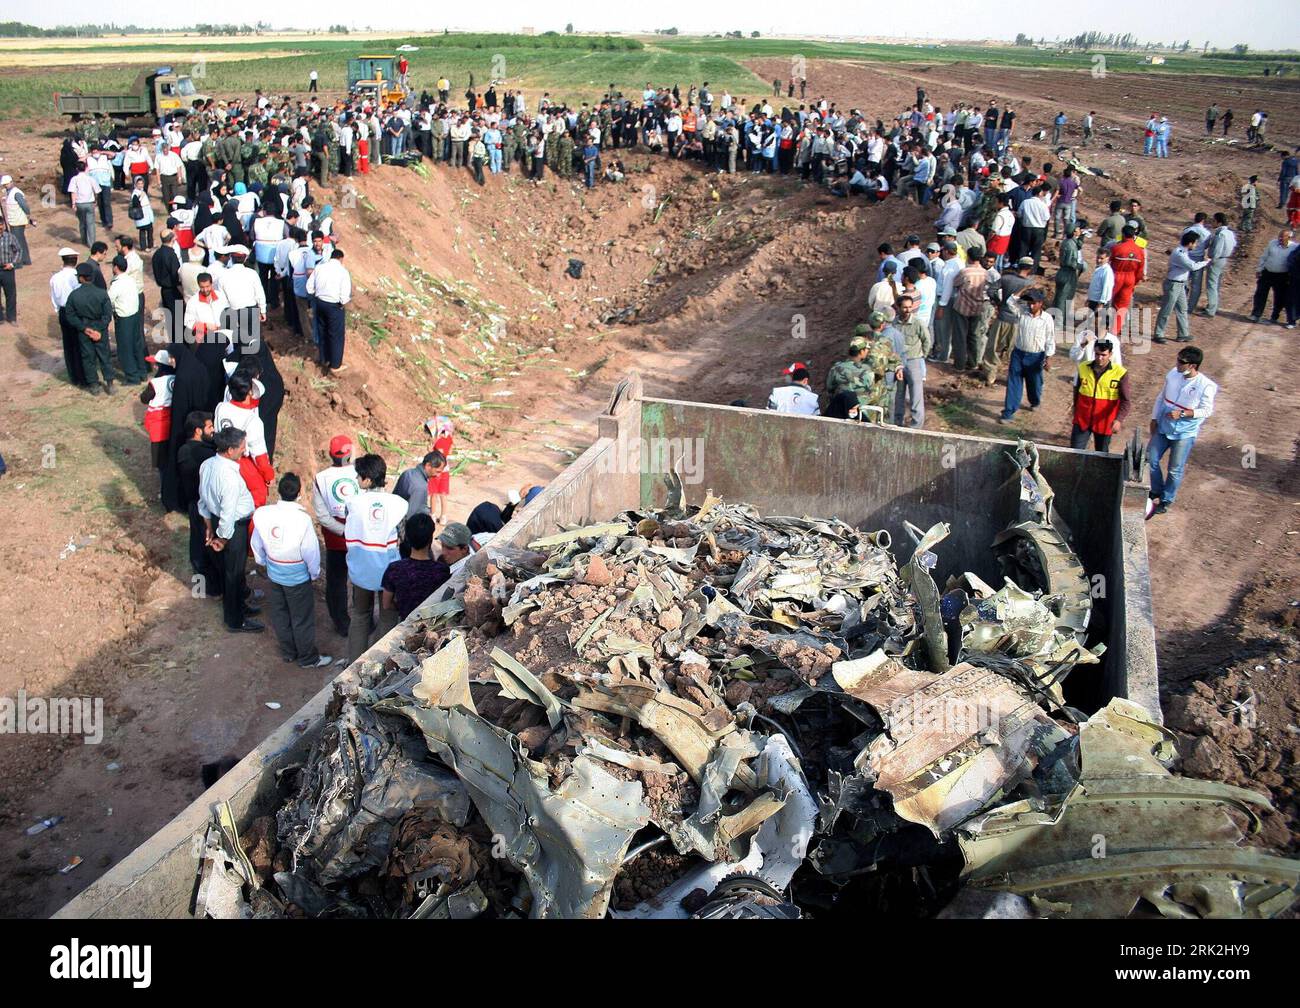 Bildnummer: 53208112 Datum: 17.07.2009 Copyright: imago/Xinhua (090716) -- QAZVIN, 16. Juli 2009 (Xinhua) -- Verwandte der Opfer des abgestürzten Tupolev Tu-154 Passagierflugzeugs trauern um den Kraterhintergrund des abgestürzten Flugzeugs in Qazvin im Nordwesten Irans, 16. Juli 2009. IRAN-AIR CRASH-OPFER VERWANDTE-TRAUER PUBLICATIONxNOTxINxCHN Flugzeugabsturz Absturz Flugzeugunglück ANGEHÖRIGE Trauer Familienangehörige TRAUERFEIER trauern Gedenken Absturzopfer Opfer premiumd kbdig xsk 2009 quer o0 Asien Bildnummer 53208112 Datum 17 07 2009 Copyright Imago XINHUA 090716 Qazvin Juli 16 2009 XINH Stockfoto